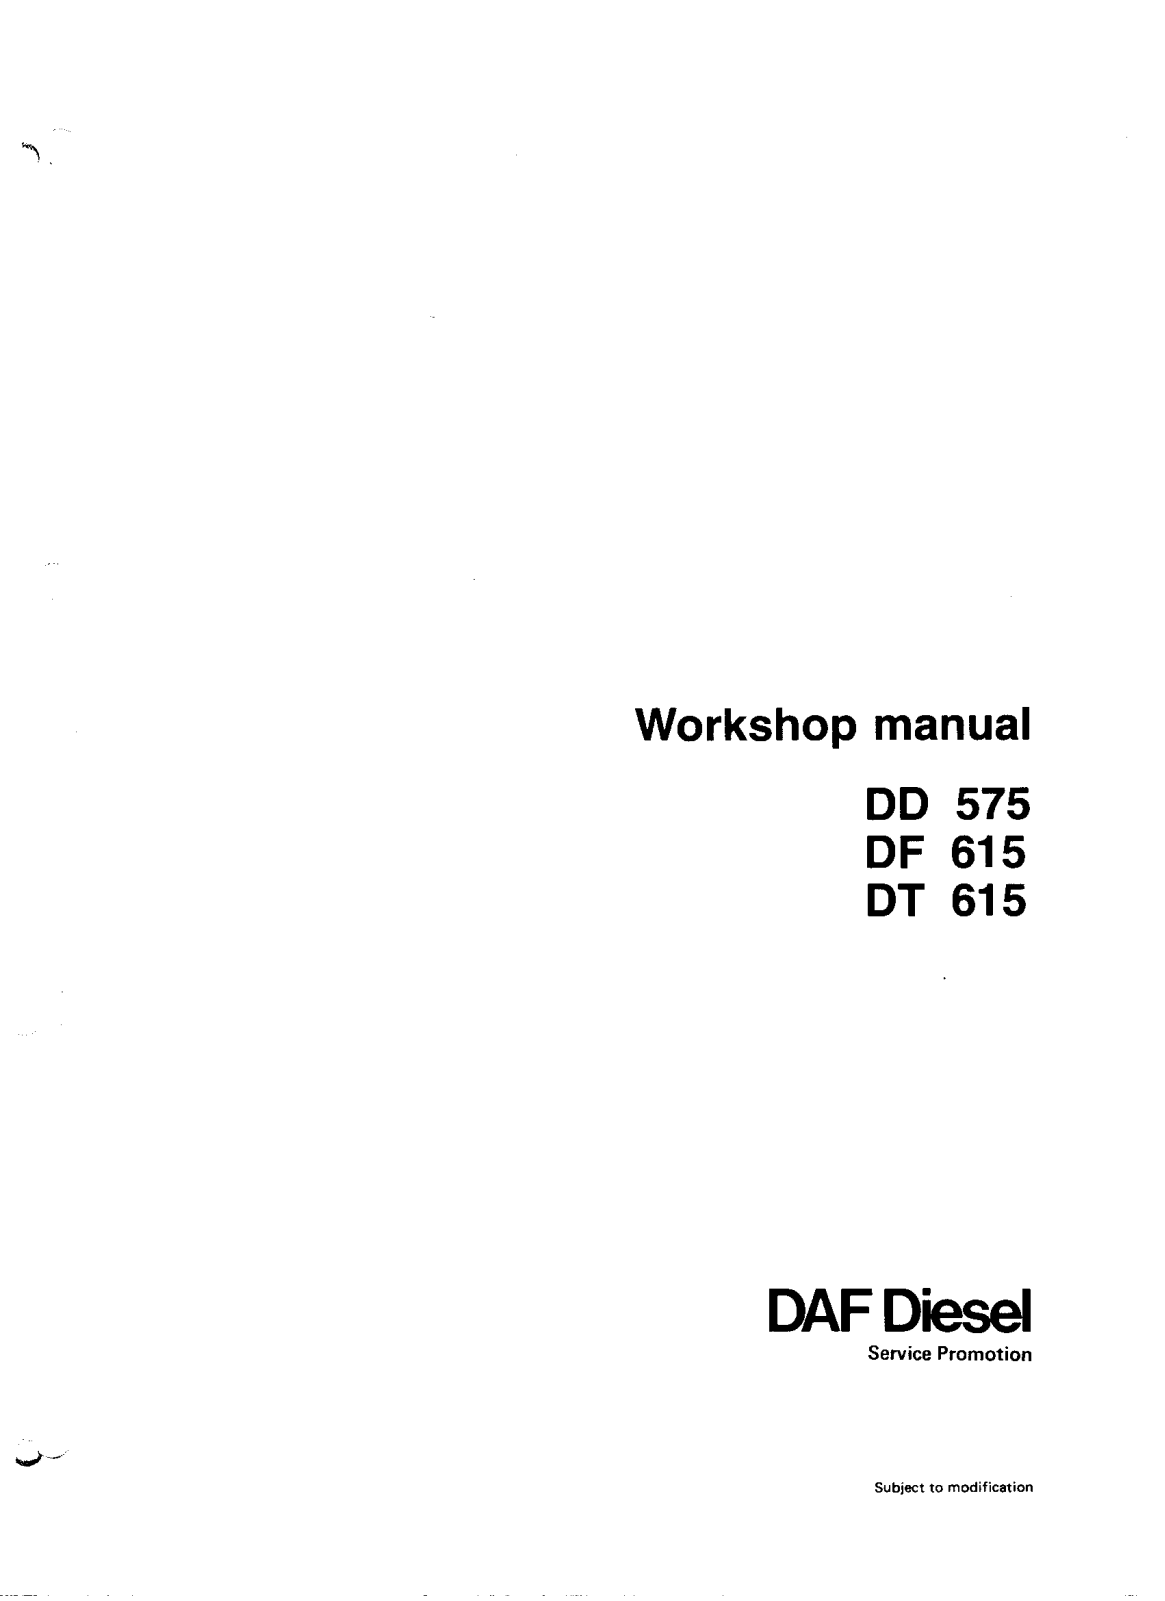 DAF DD575, DF615, DT315 Service Manual